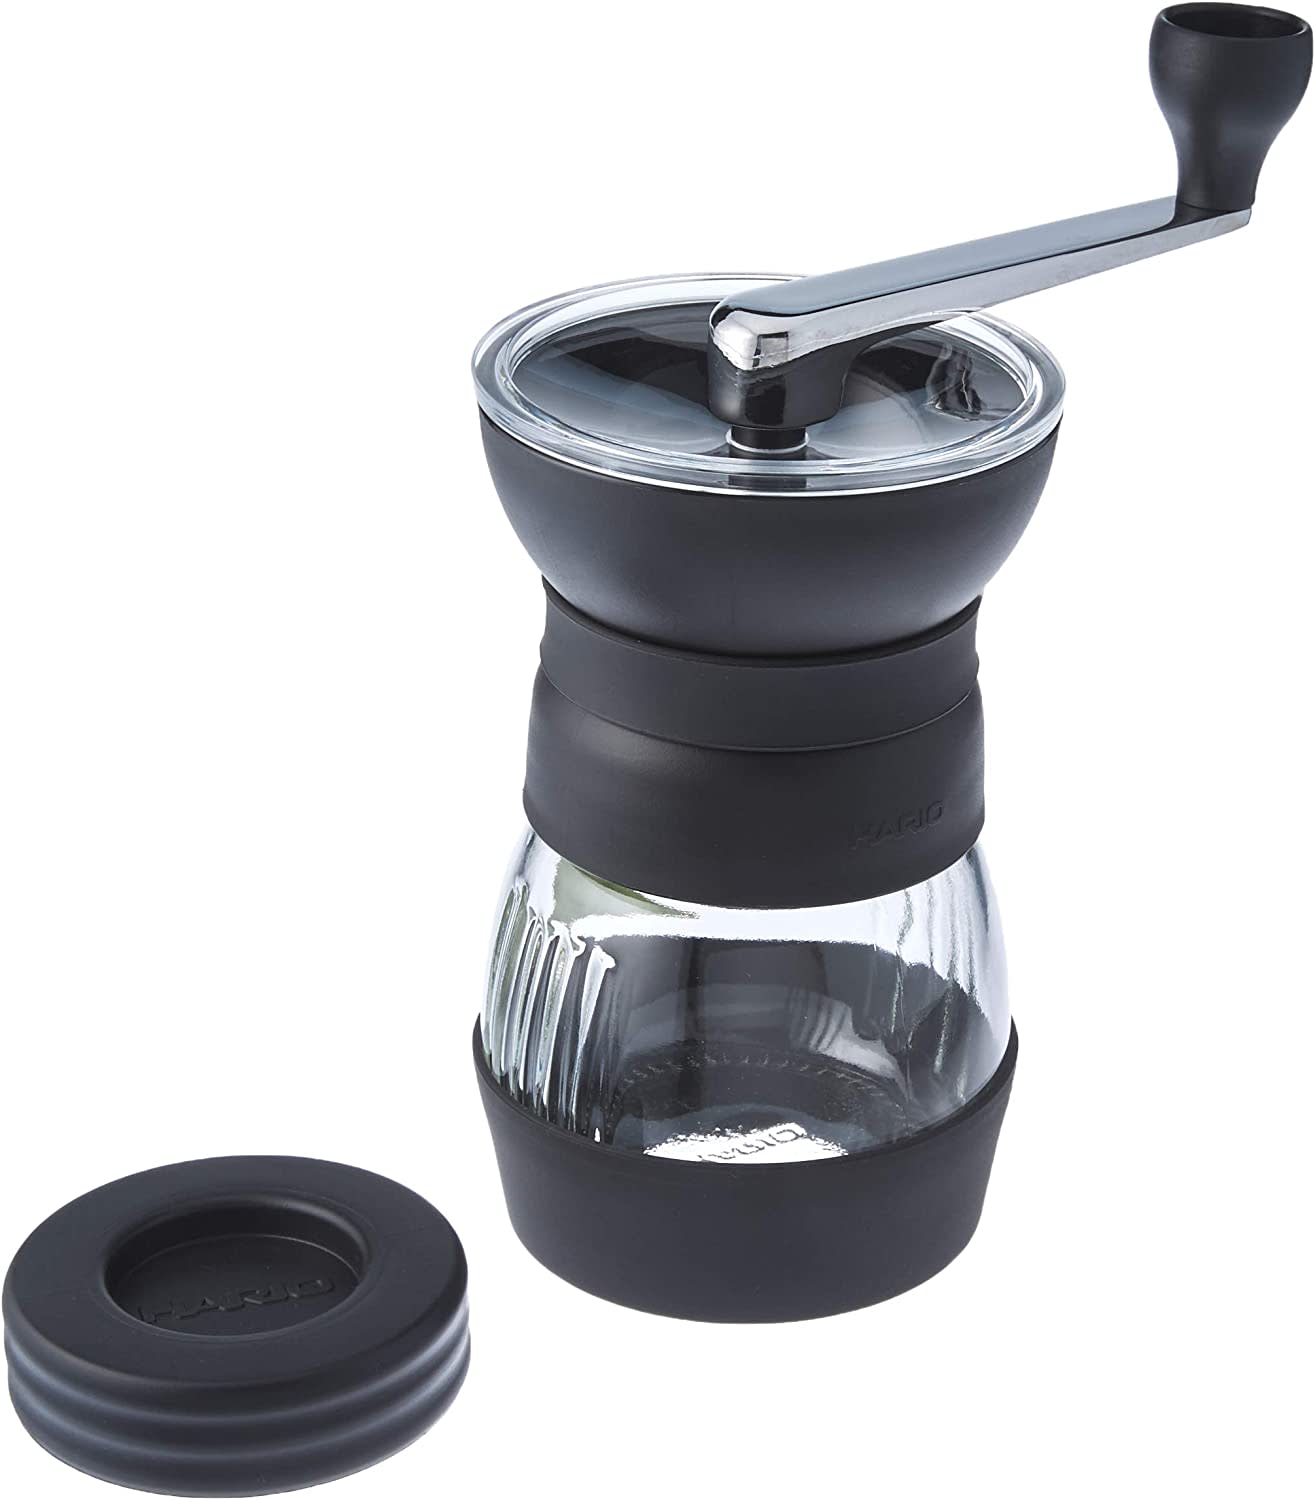 HARIO Skerton Pro Ceramic Manual Coffee Grinder